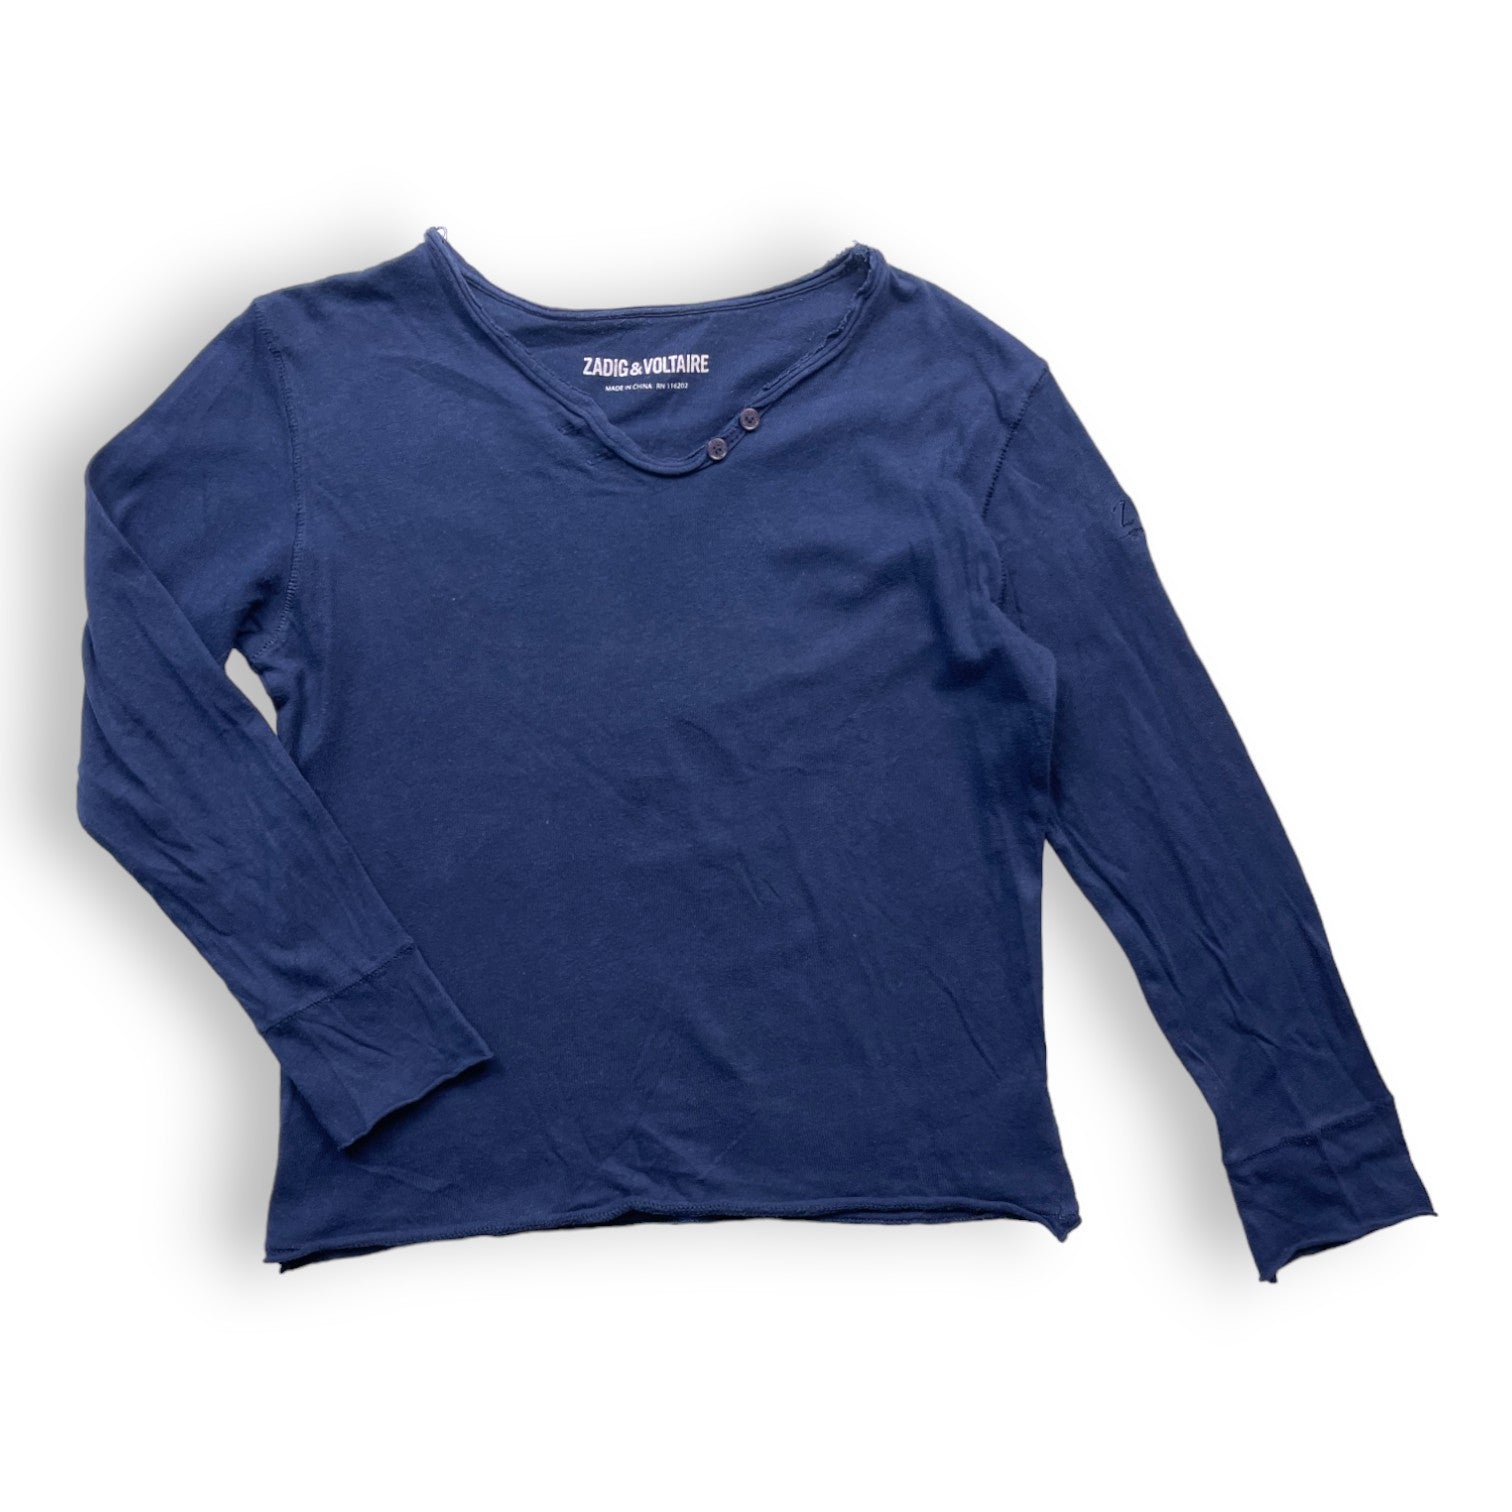 ZADIG & VOLTAIRE - T shirt bleu marine manches longues à motifs dans le dos - 8 ans